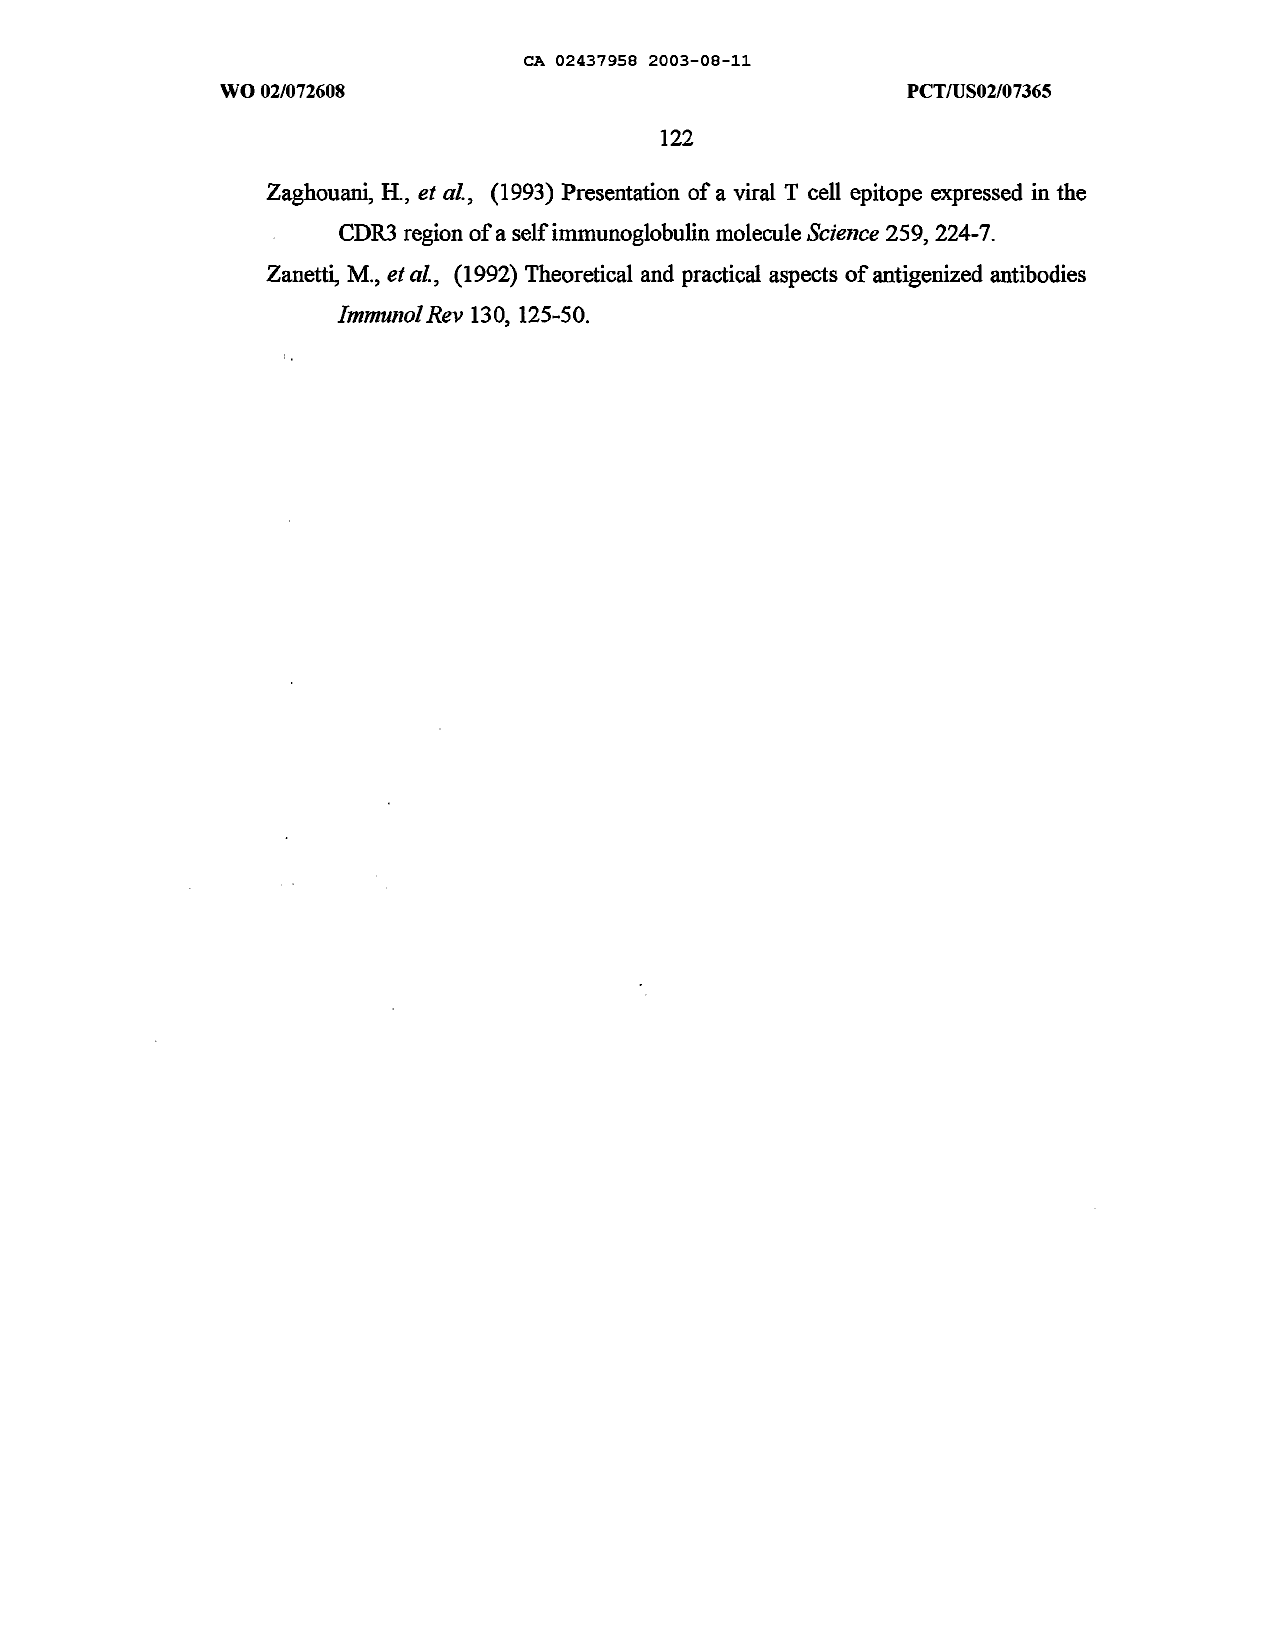 Canadian Patent Document 2437958. Description 20170907. Image 123 of 123